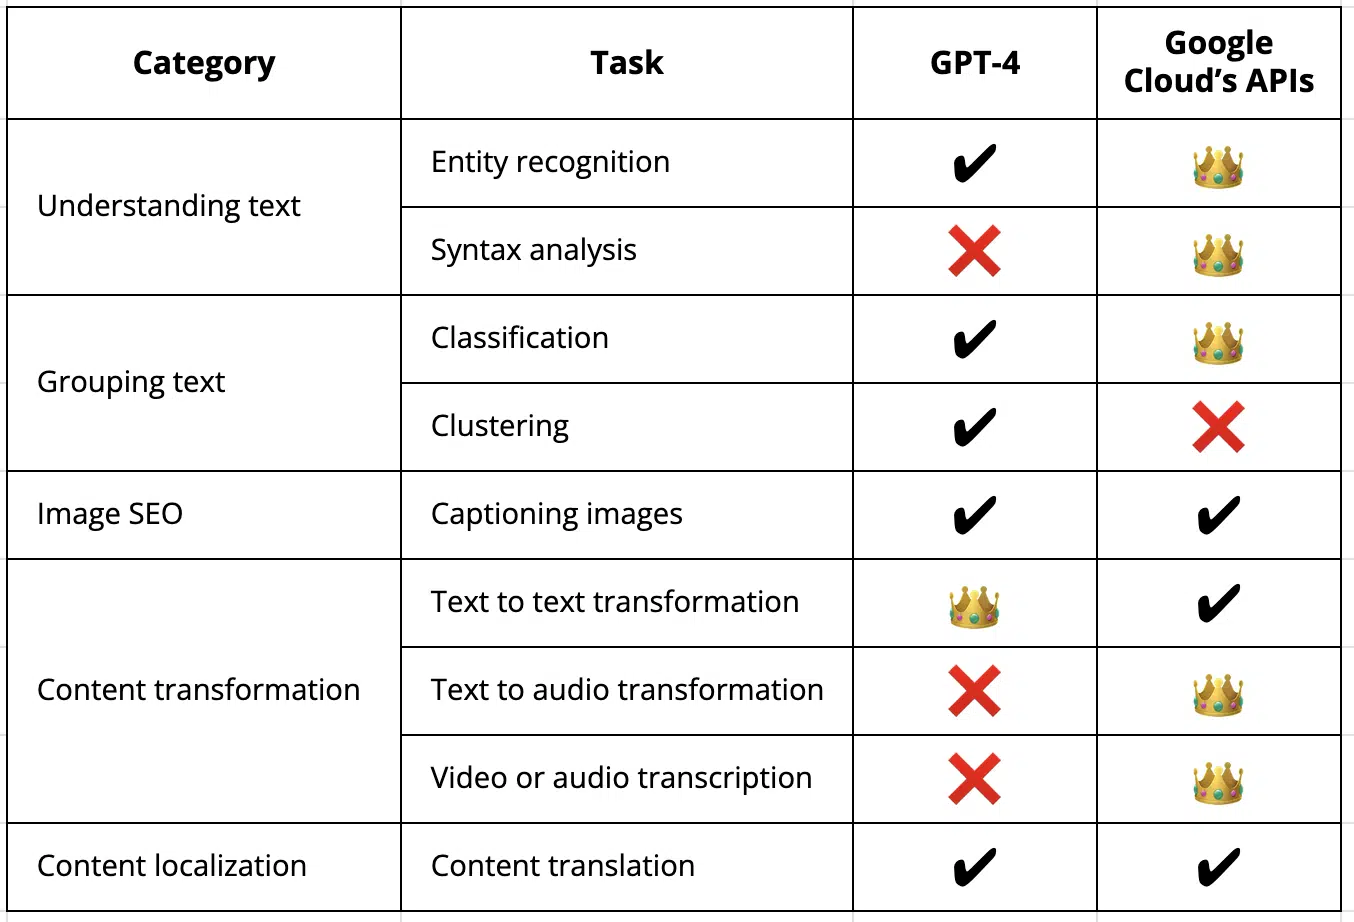 Performance comparison on 9 SEO tasks